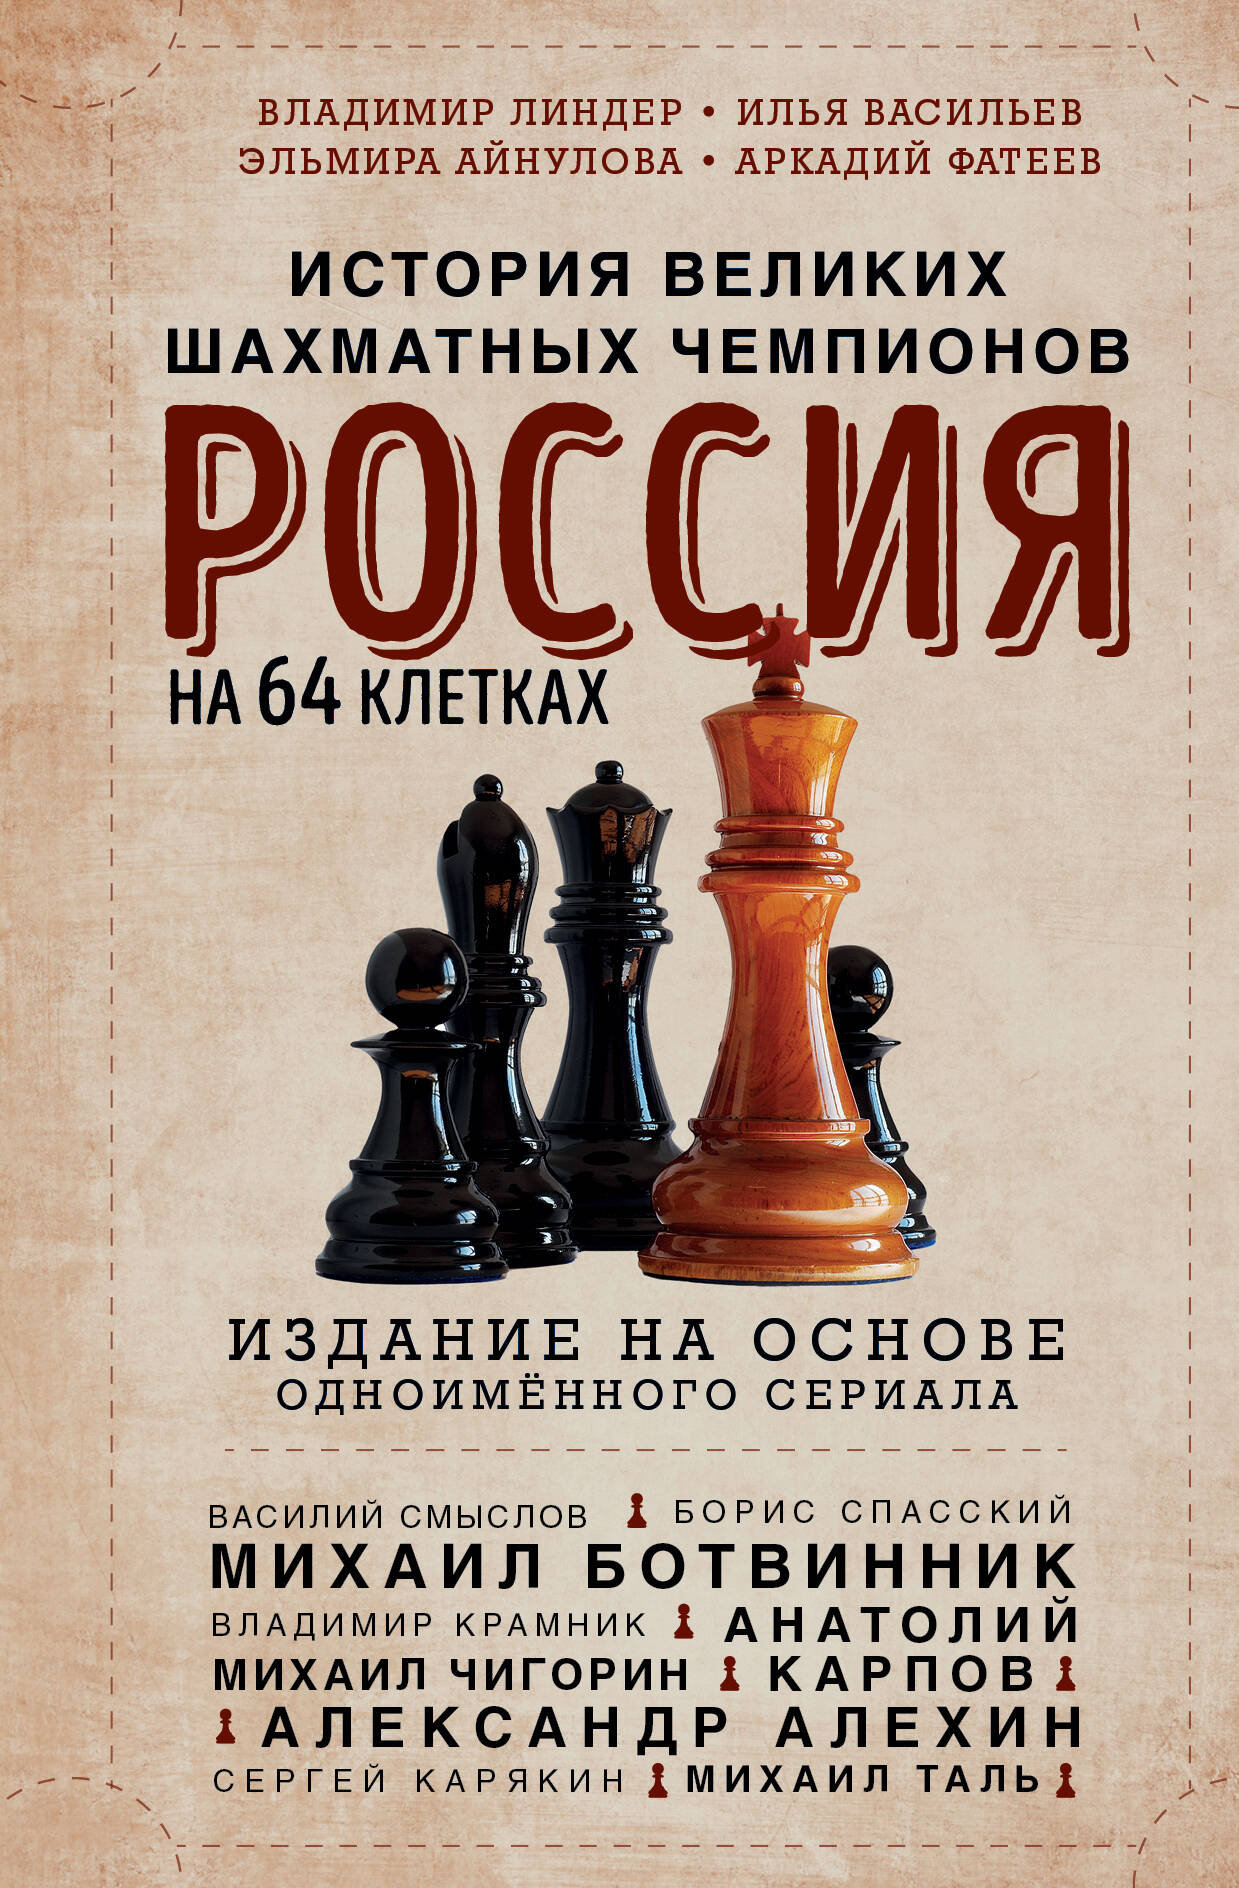  книга Россия на 64 клетках. История великих шахматных чемпионов